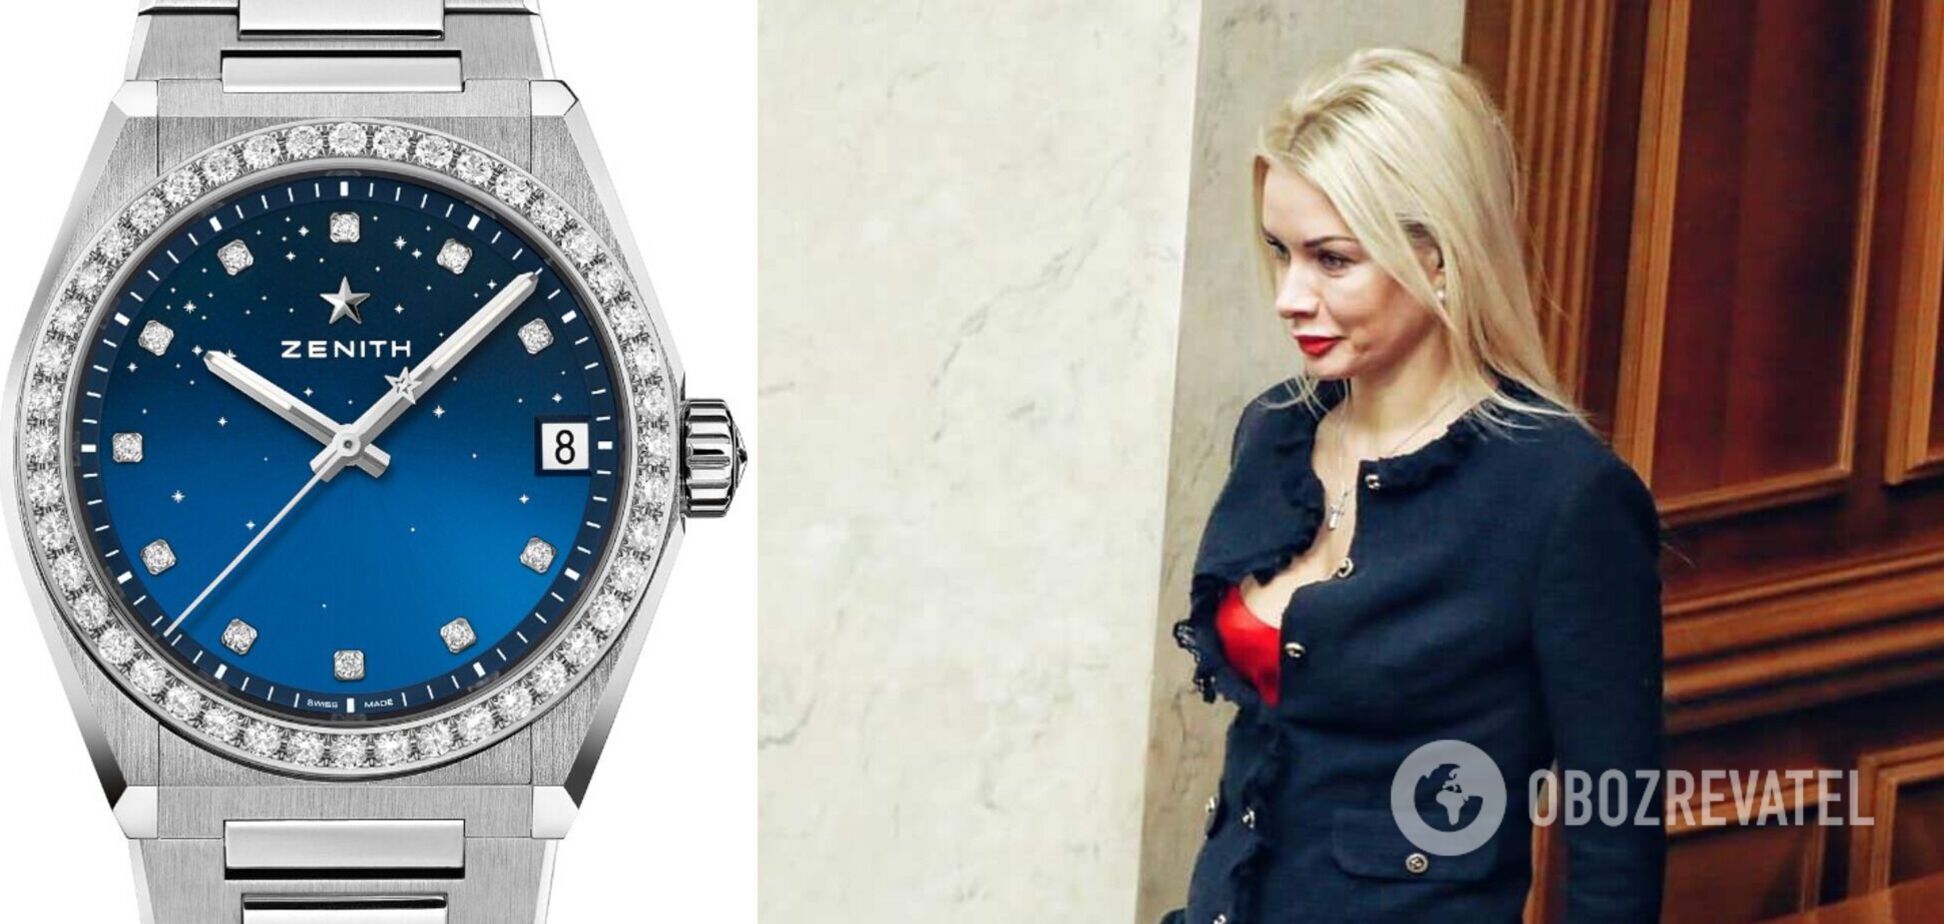 'Слуга' Аллахвердиева получила в подарок свыше 5 млн гривен и дорогие часы. Фото